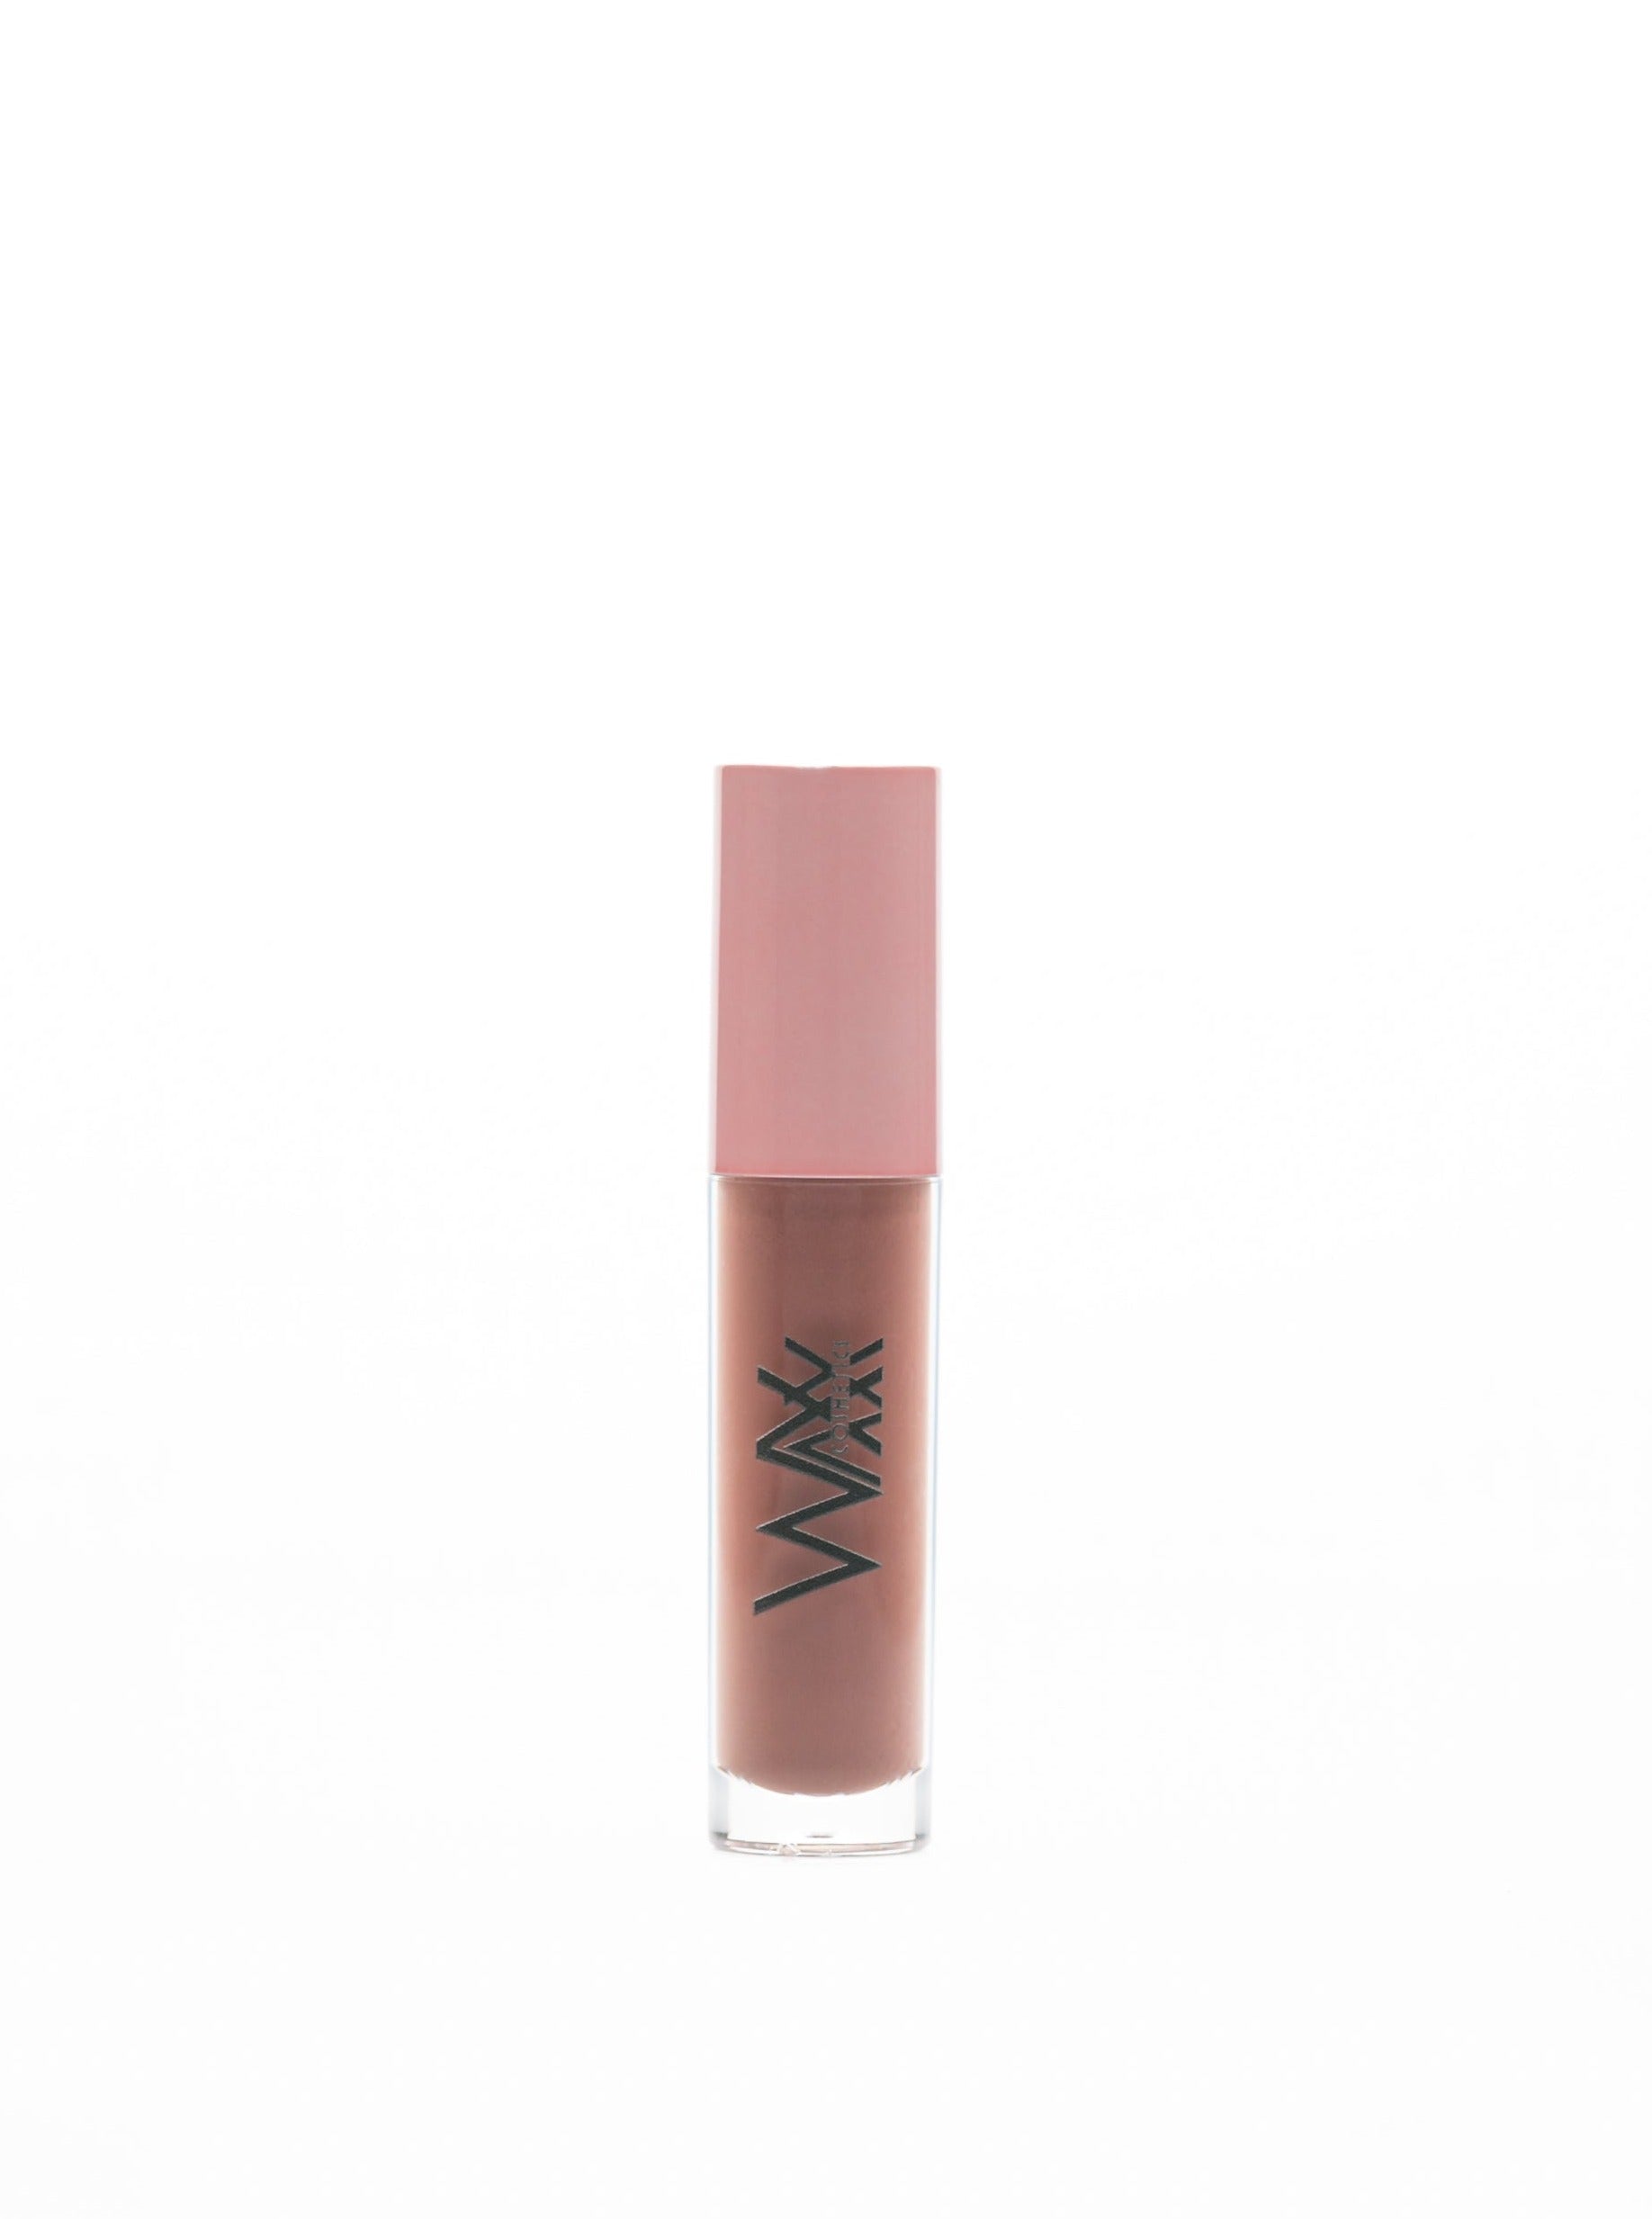 Waxx Cosmetics